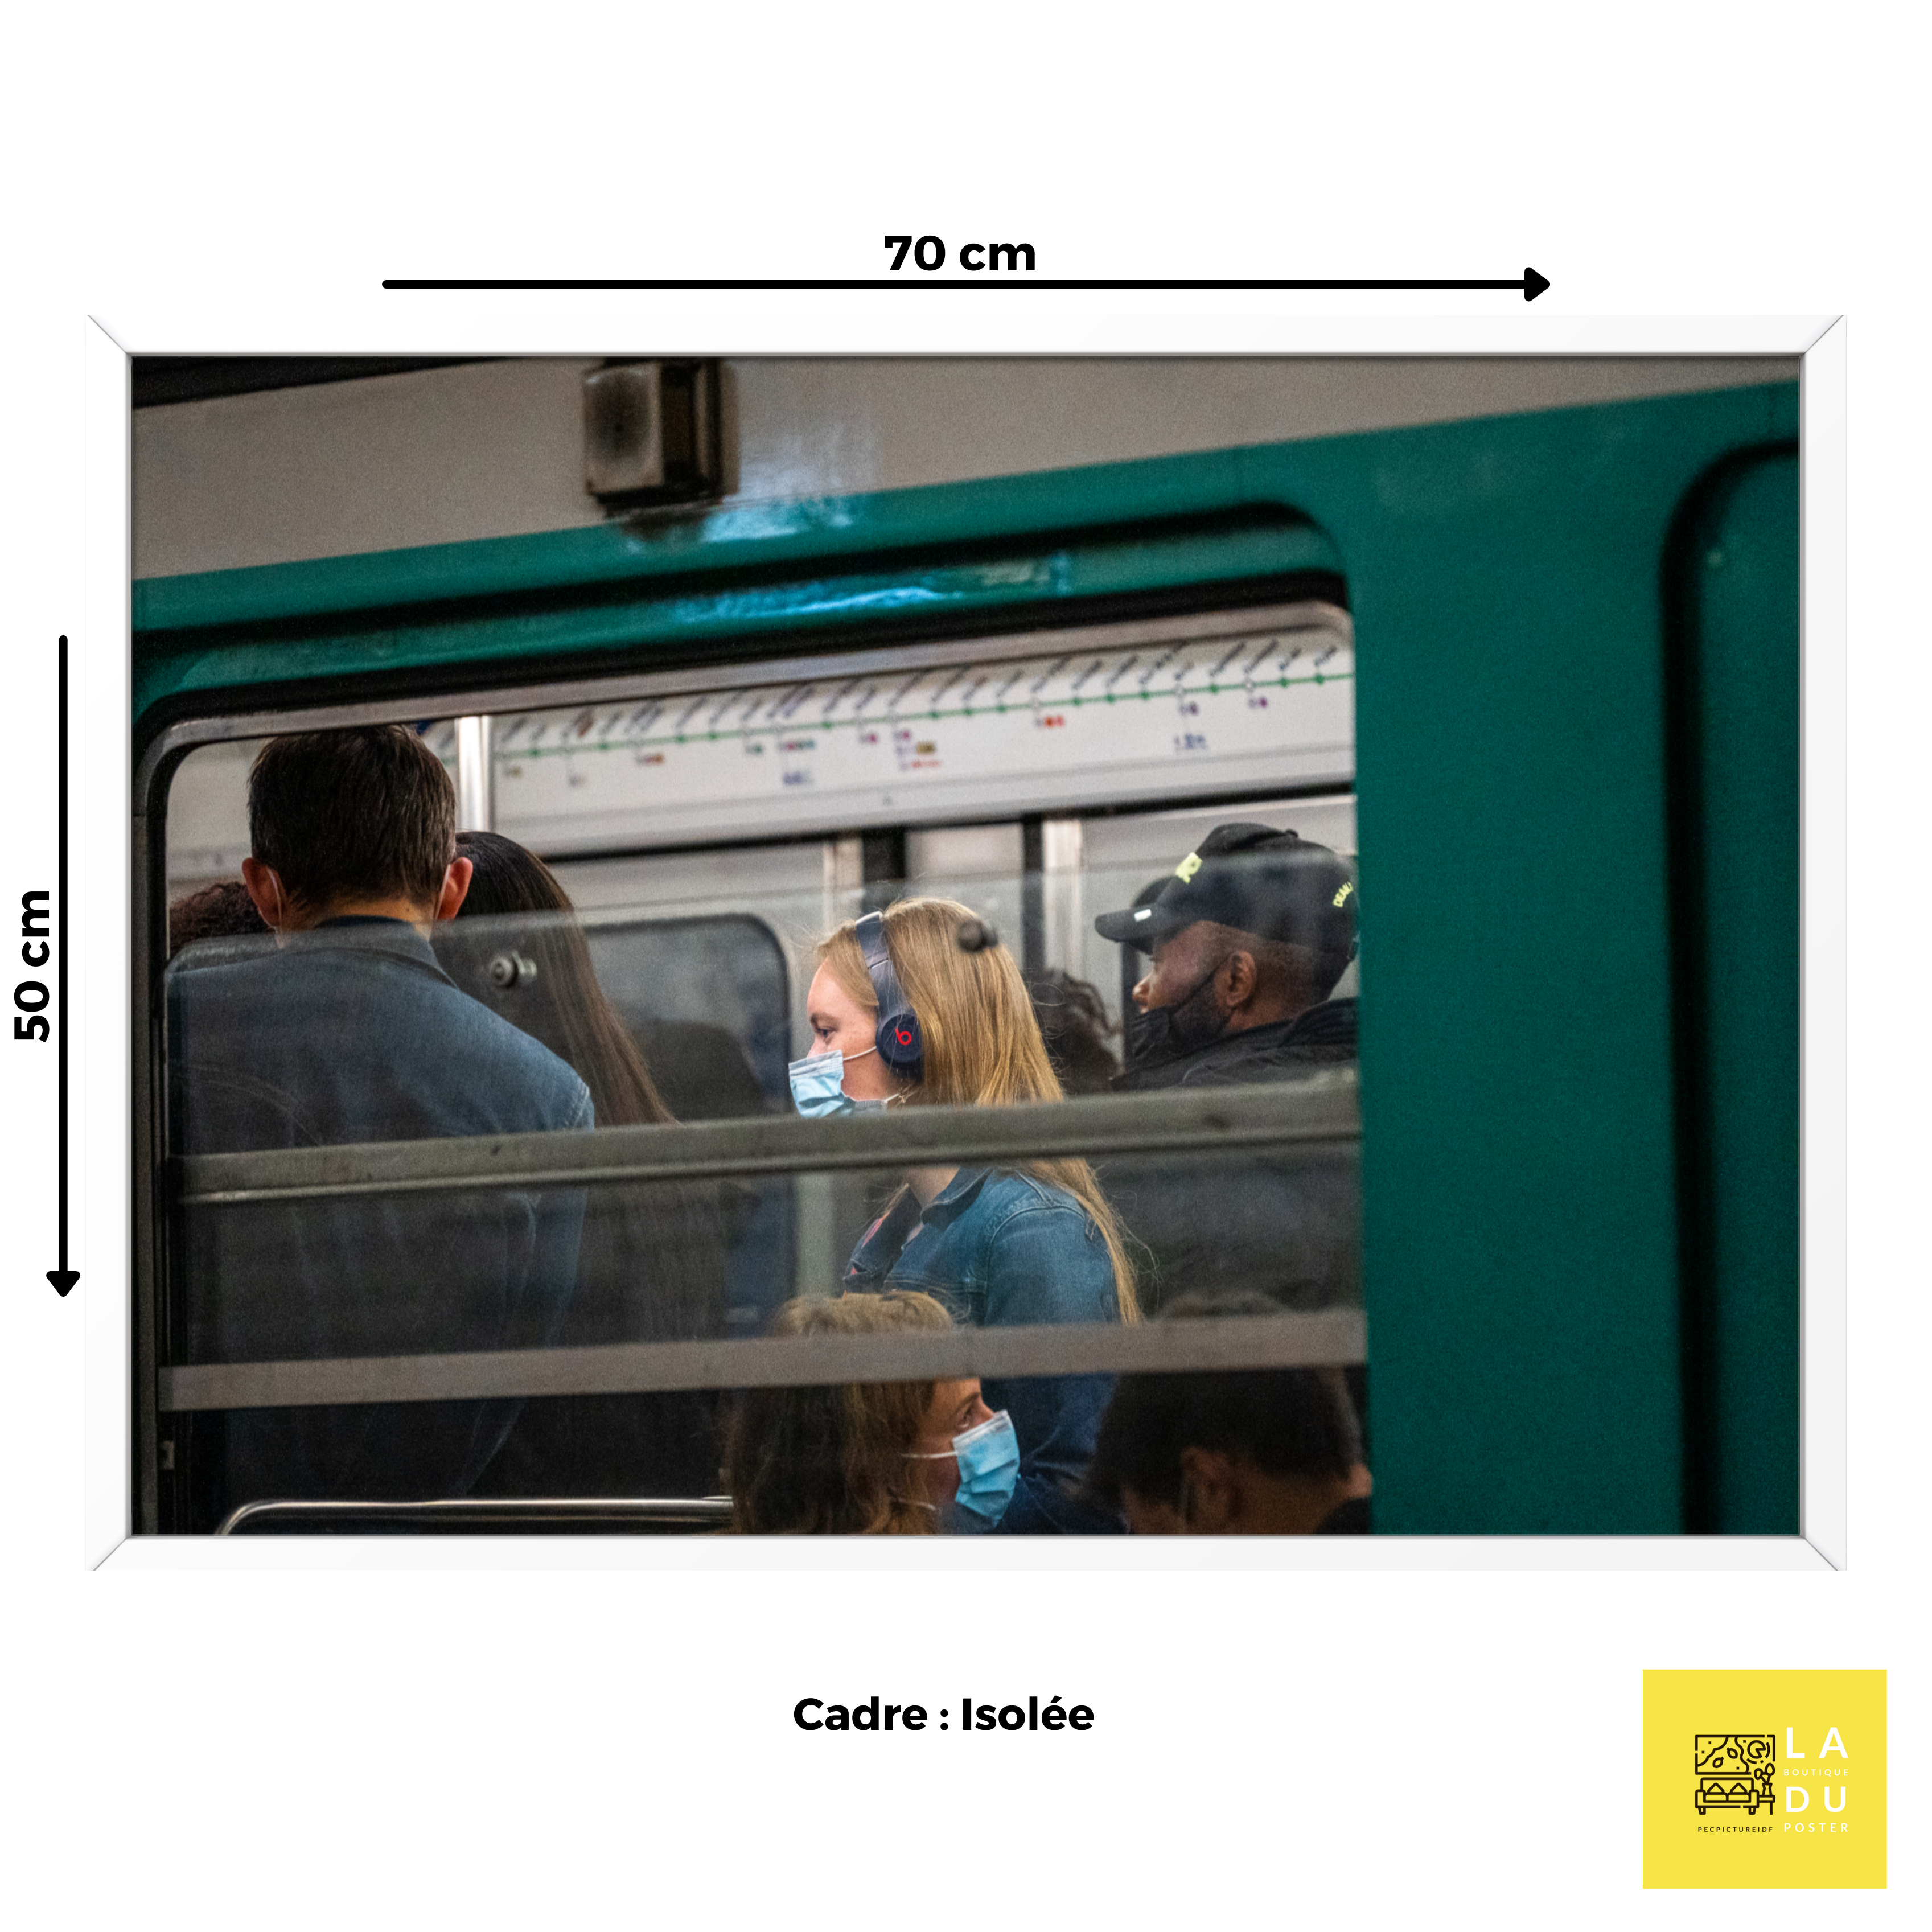 Elle est isolée dans le métro - Poster encadré - La boutique du poster Français